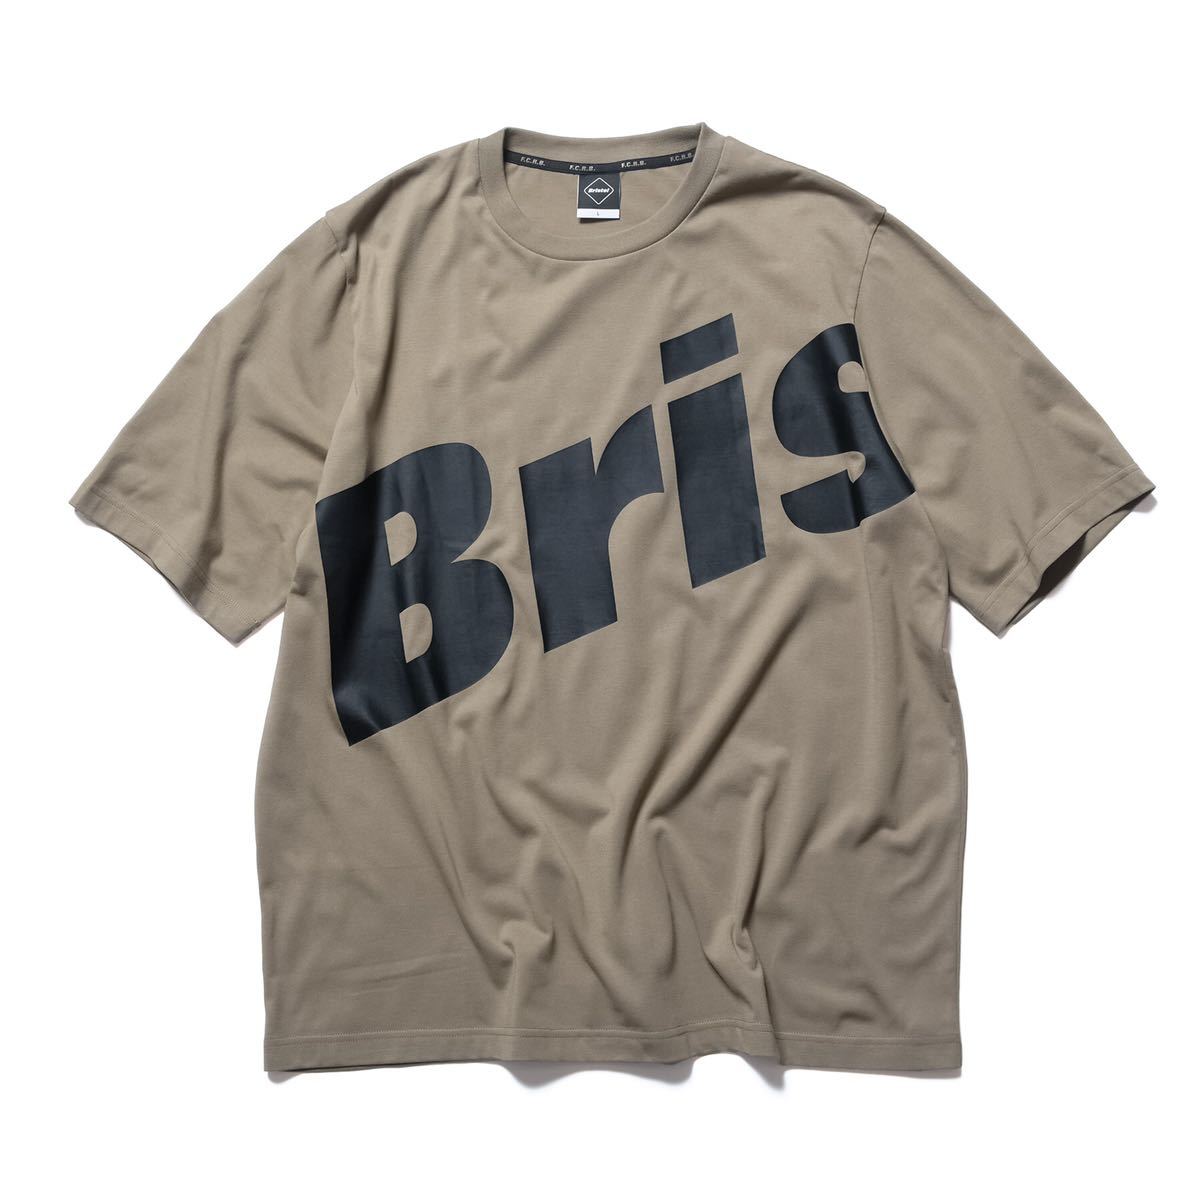 新版 ブリストル F.C.R.B. SOPHNET SOPH BEIGE TEE LOGO BRIS BIG FIT RELAX 22SS FCRB  送料無料 新品 L BRISTOL Tシャツ Bristol F.C.Real - 半袖